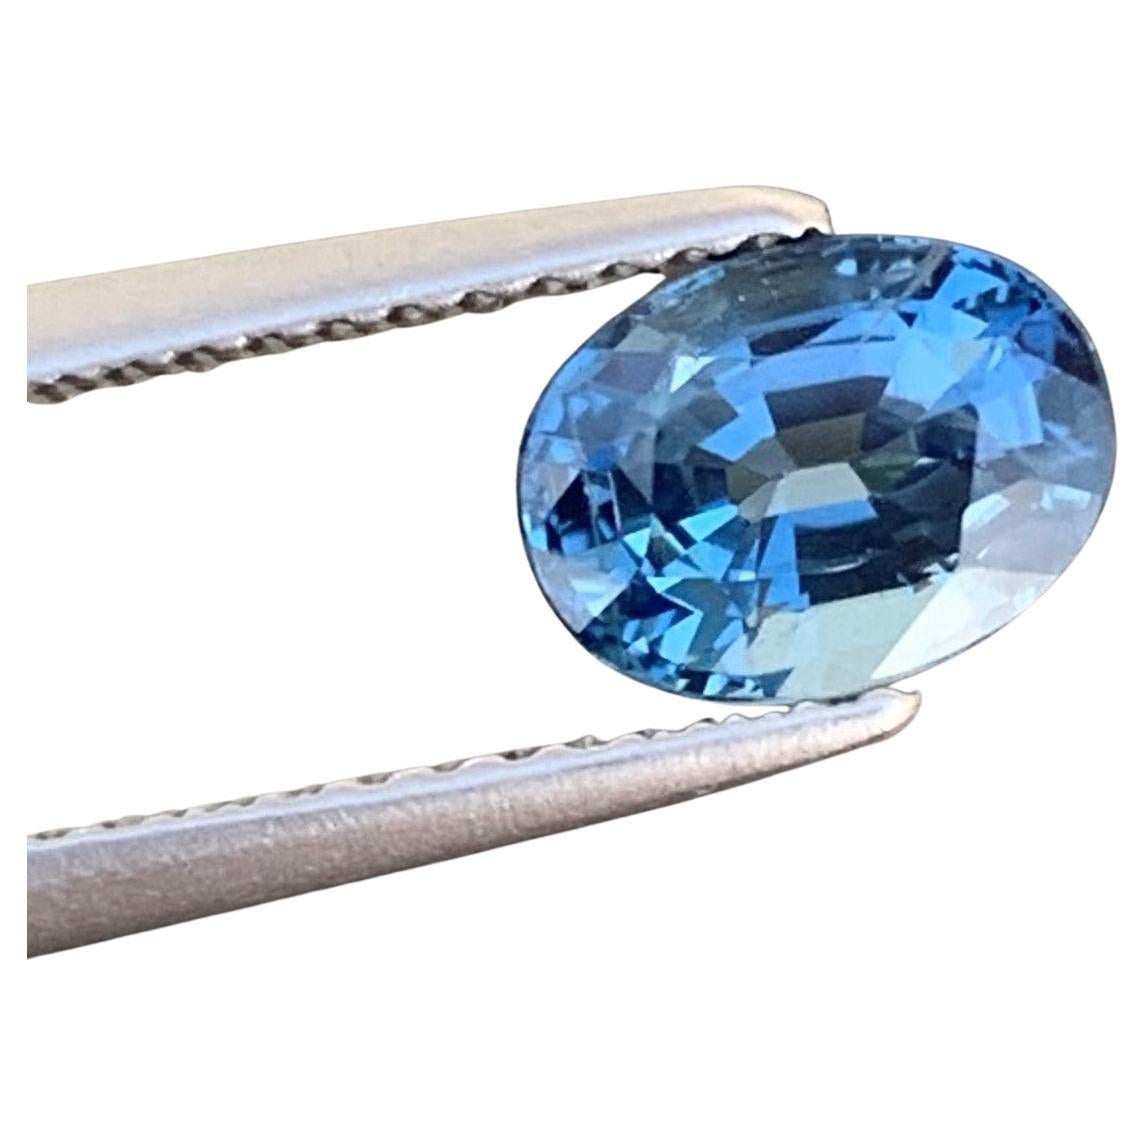 Magnifique pierre précieuse tanzanite bleue naturelle de forme ovale de 1,50 carat 